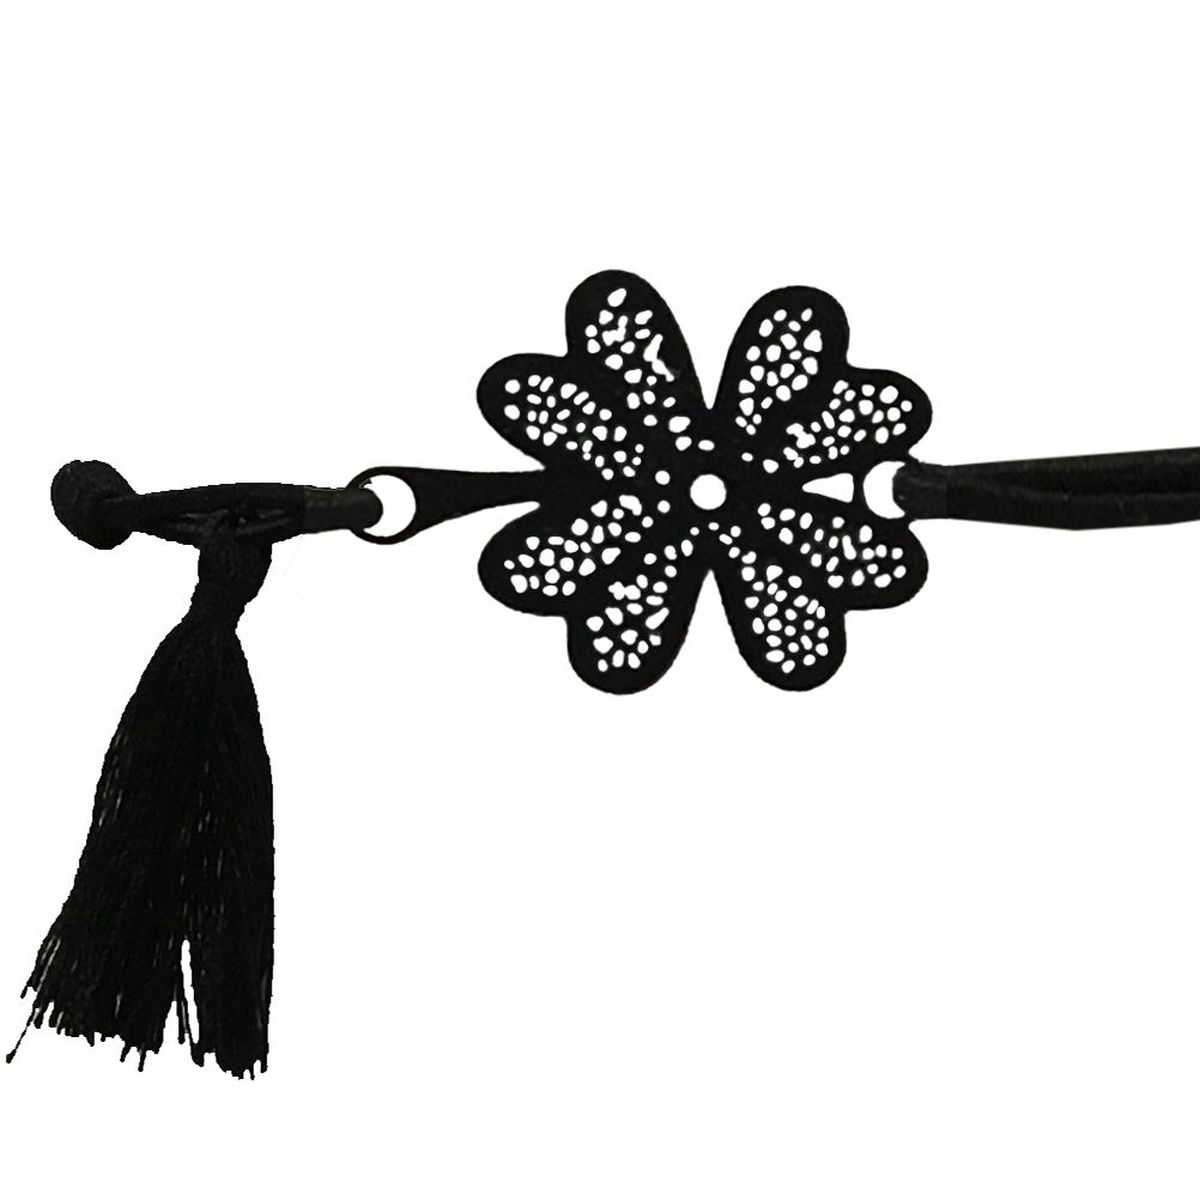 Bracelet Fantaisie filigrane noir lastique - Fleur